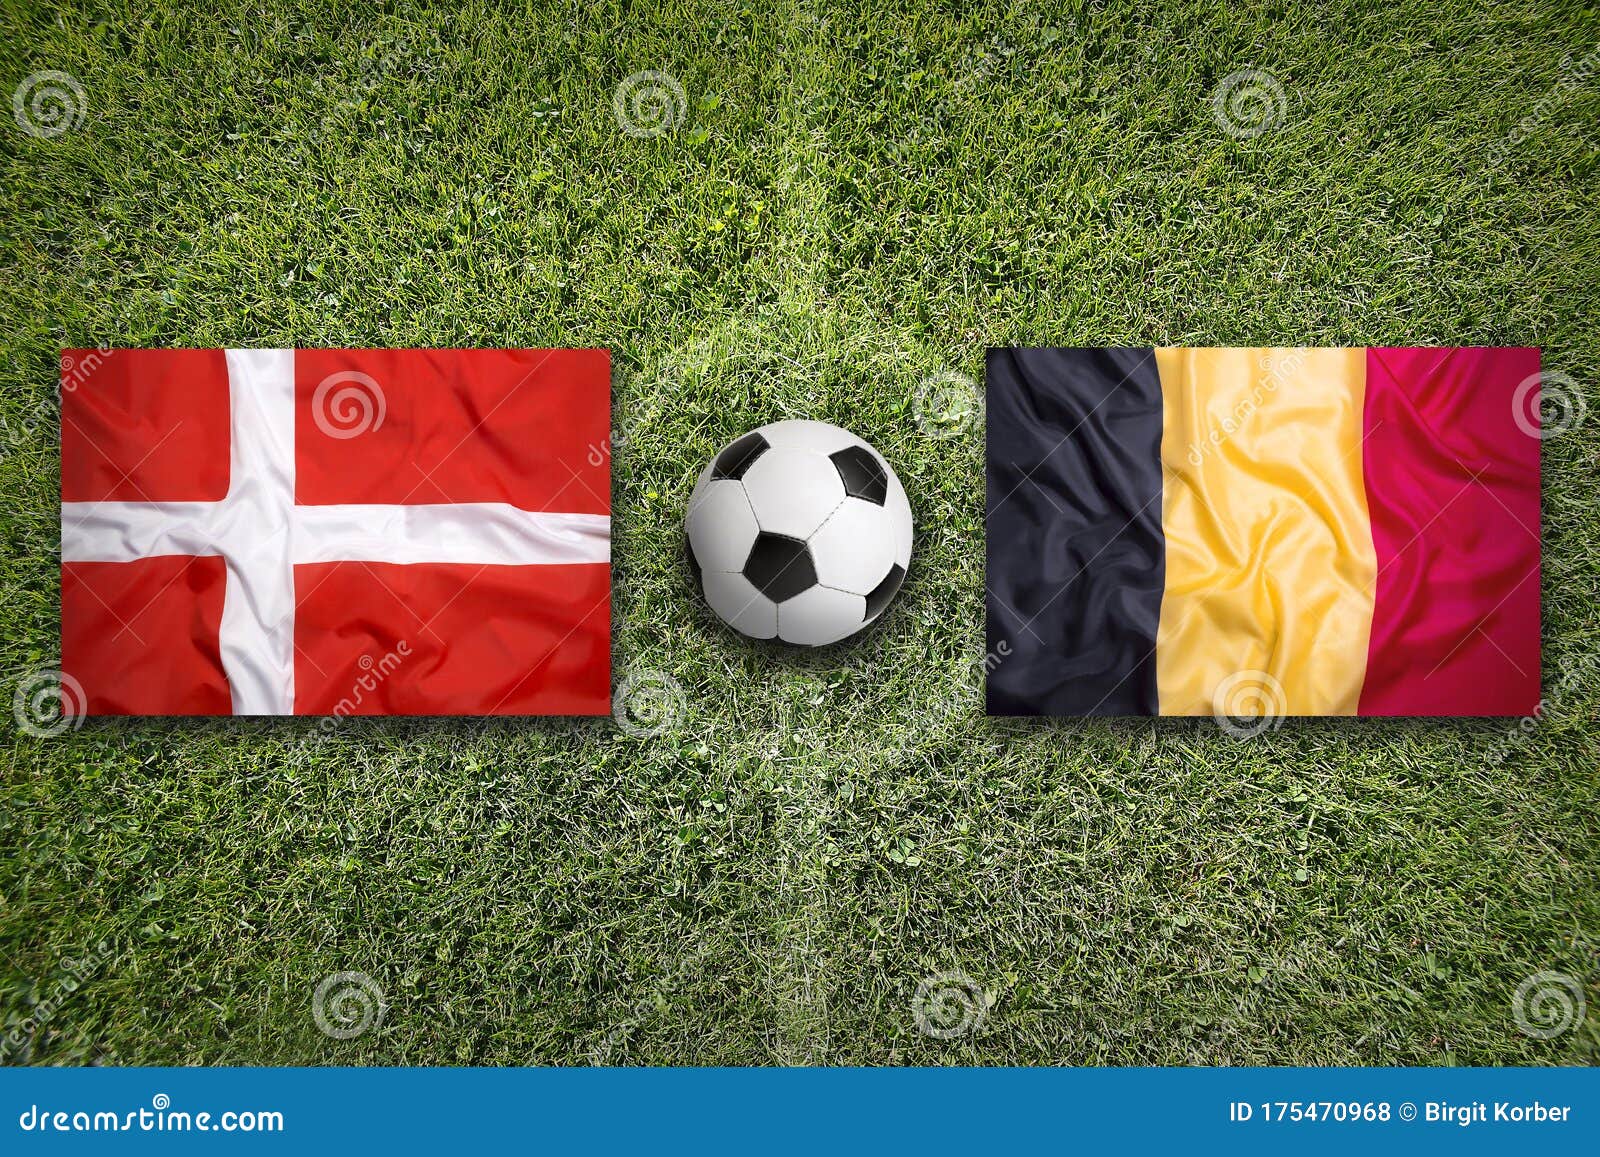 Denmark Vs Belgium Flags On Soccer Field Stock Photo Image Of Nation Banner 175470968